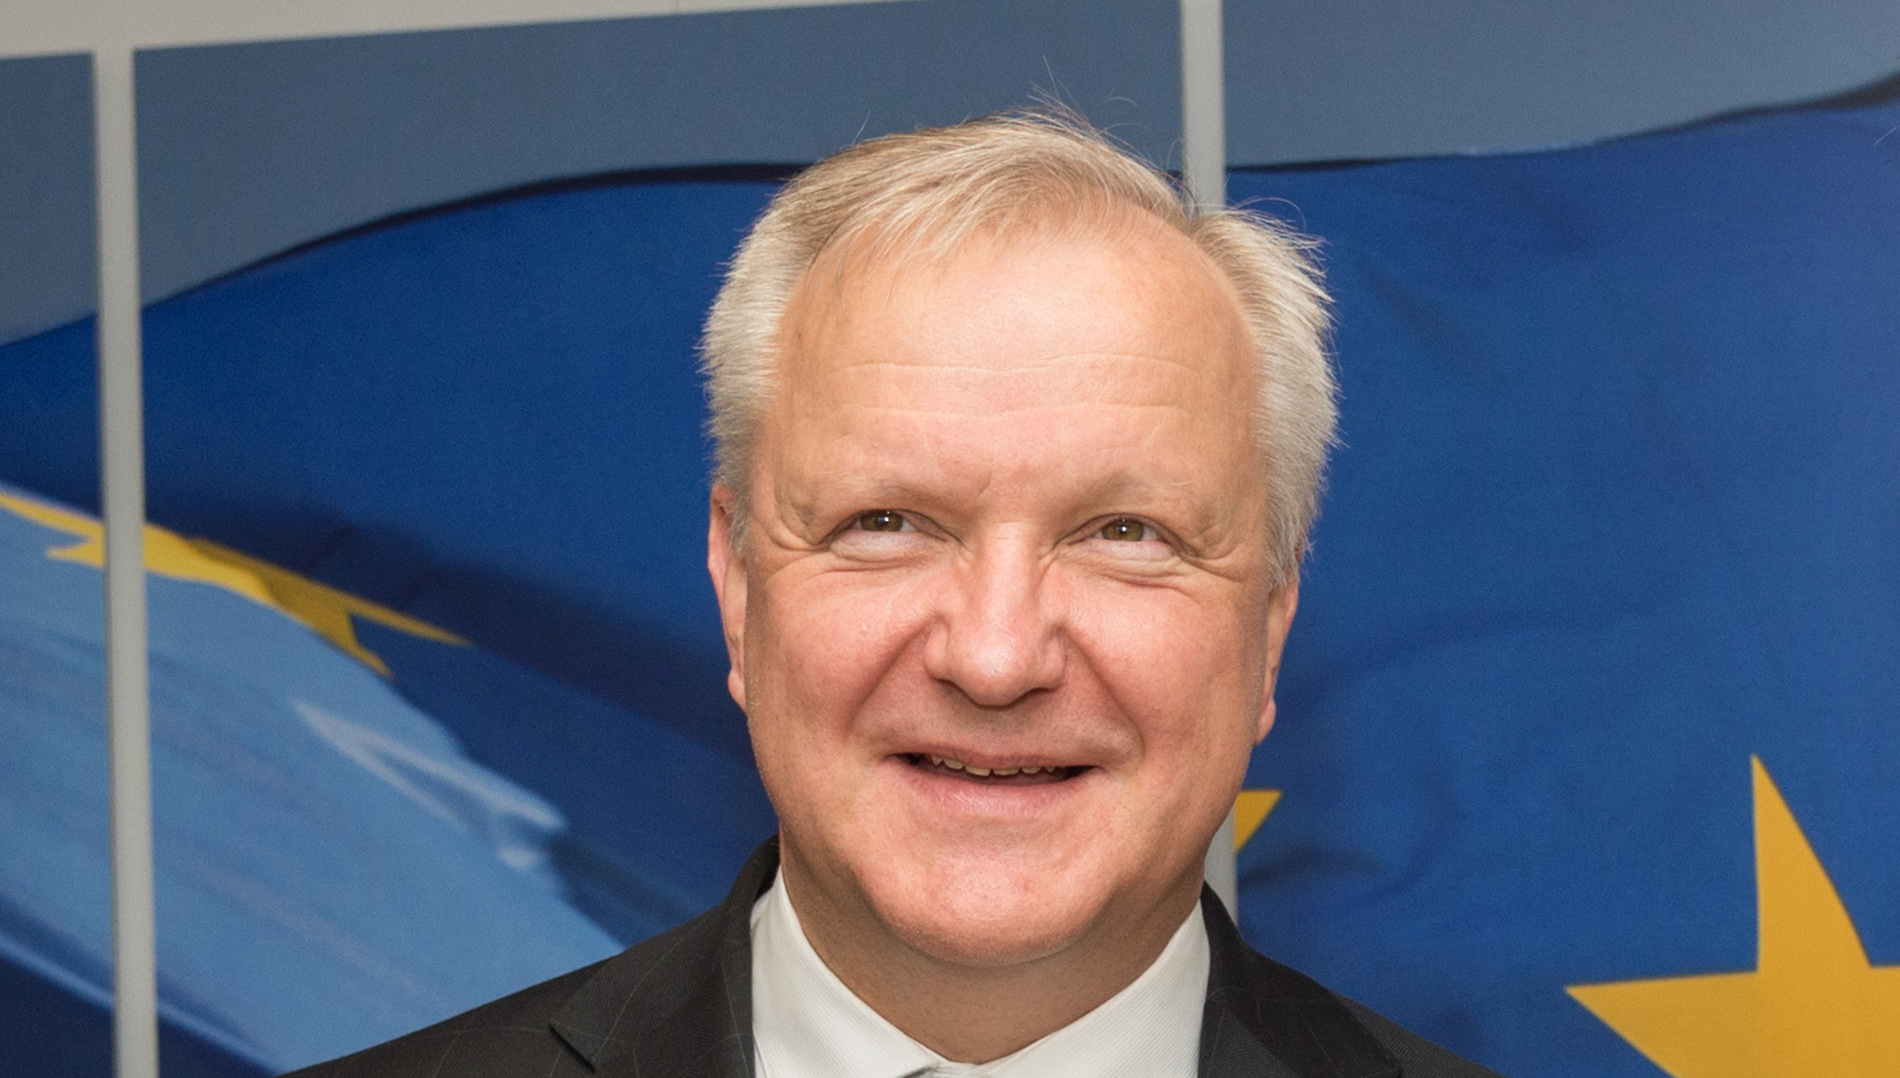 Arhitekt mjera štednje i mjeritelj javnog duga Olli Rehn priželjkuje mjesto guvernera ECB-a